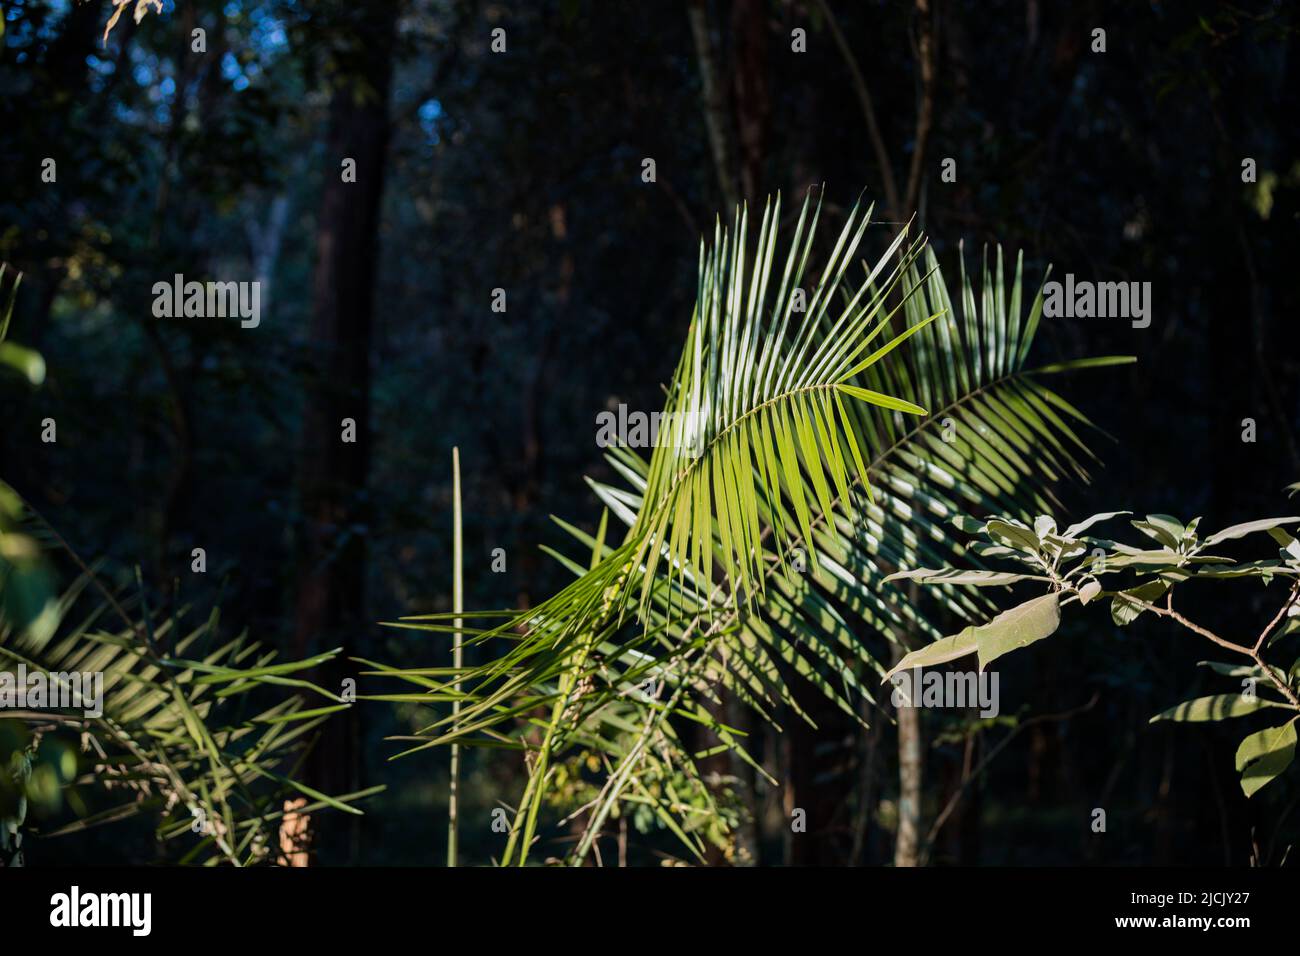 Baumstamm detaillierte Texturen der grünen Pflanzen im Wald Kenia Ostafrika, Sigiria Gate Karura Forest in Nairobi City County kenianische Landschaften Stockfoto